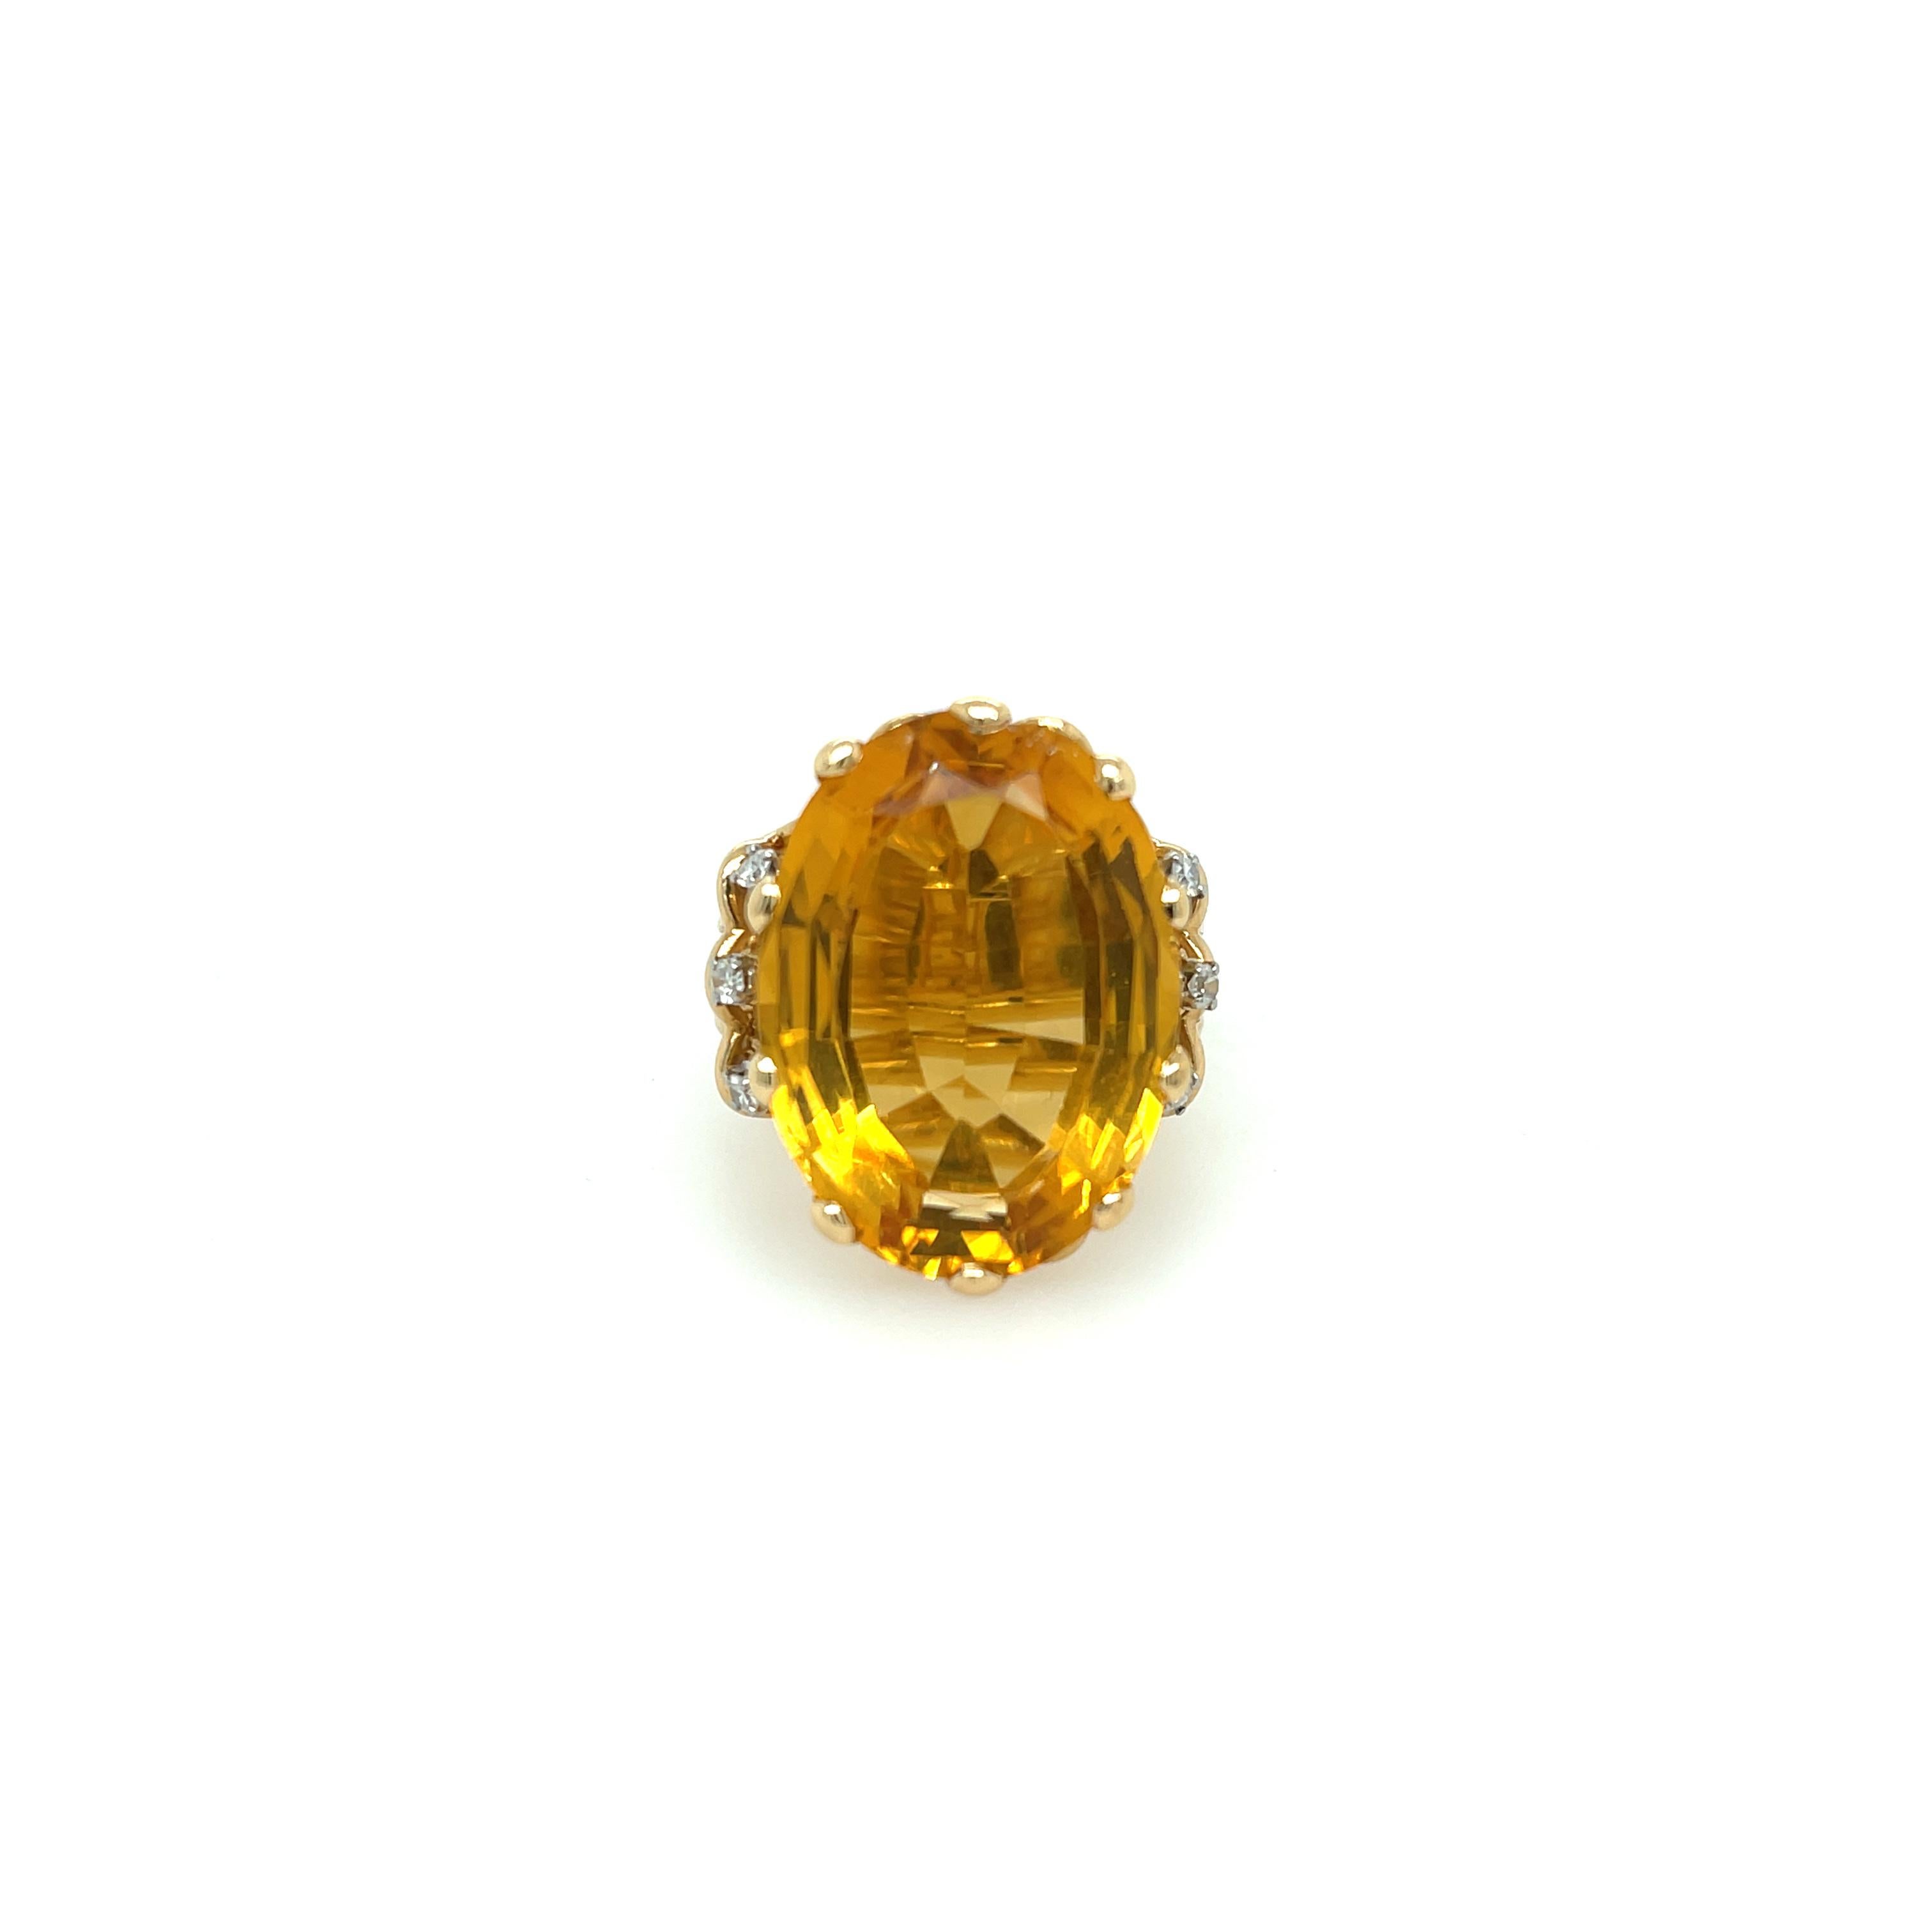 Bague en or jaune 14K avec citrine et diamant. La bague est ornée d'une citrine de taille ovale d'environ 18,5ct et de 6 diamants ronds (0,15ctw apprx). 
Bague taille 6.5
14,4 grammes
